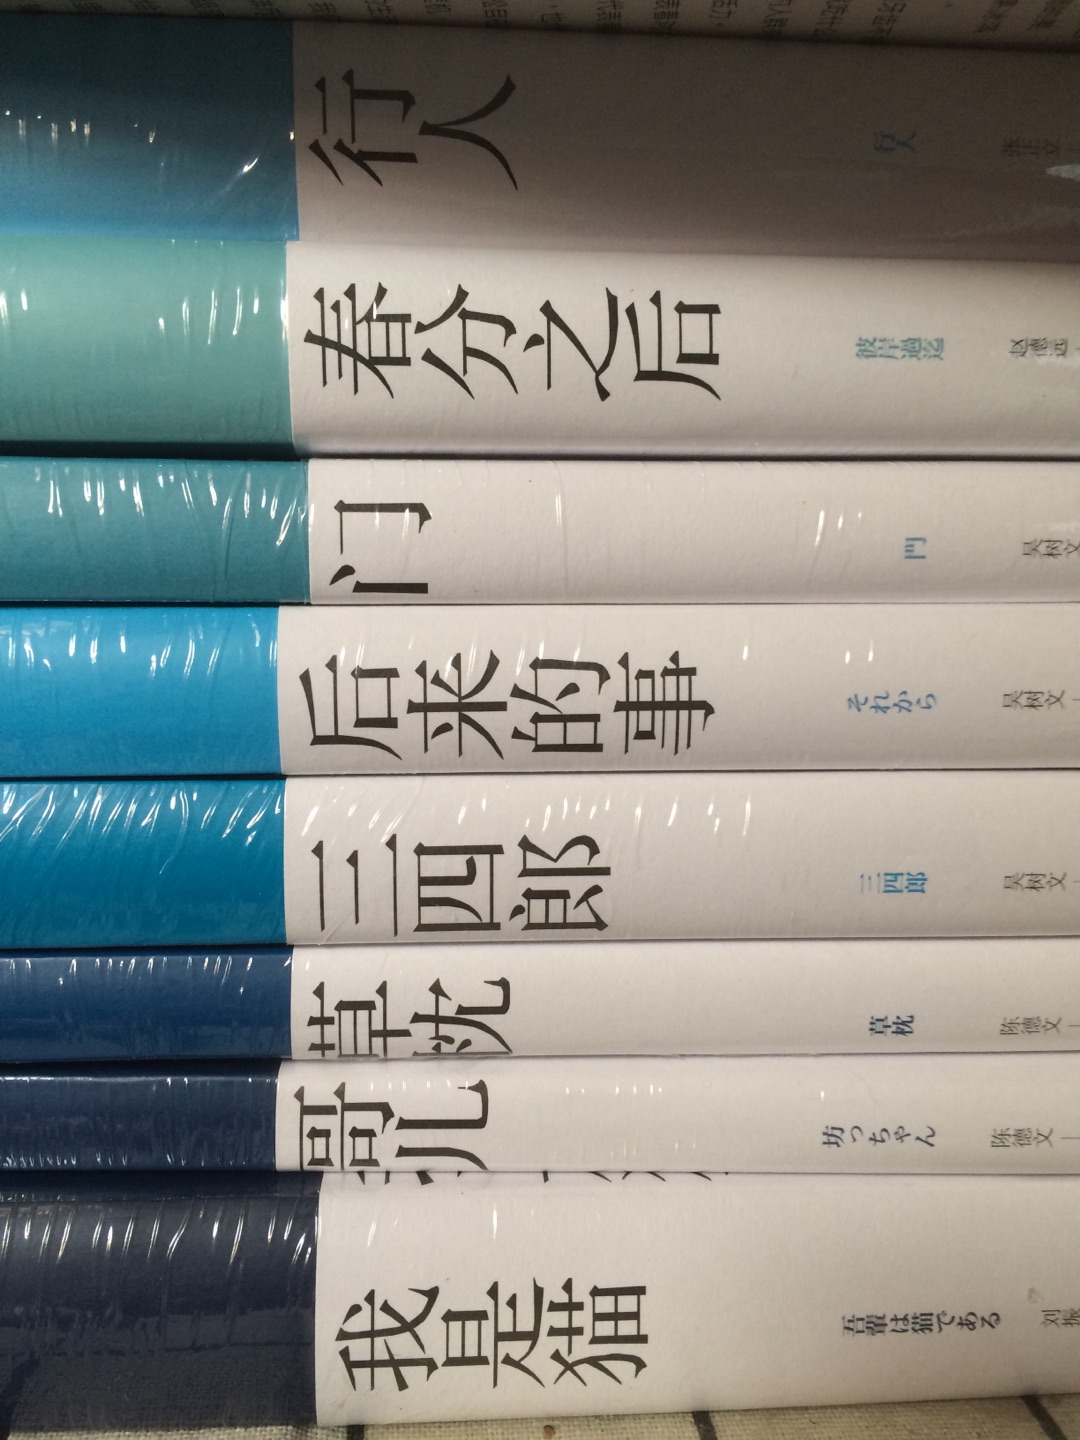 趁着618大促买了一波夏目漱石，书脊的颜色深浅是按照作品的时间先后顺序来拍的，很好玩儿呐。人丑就要多读书哈哈哈哈哈